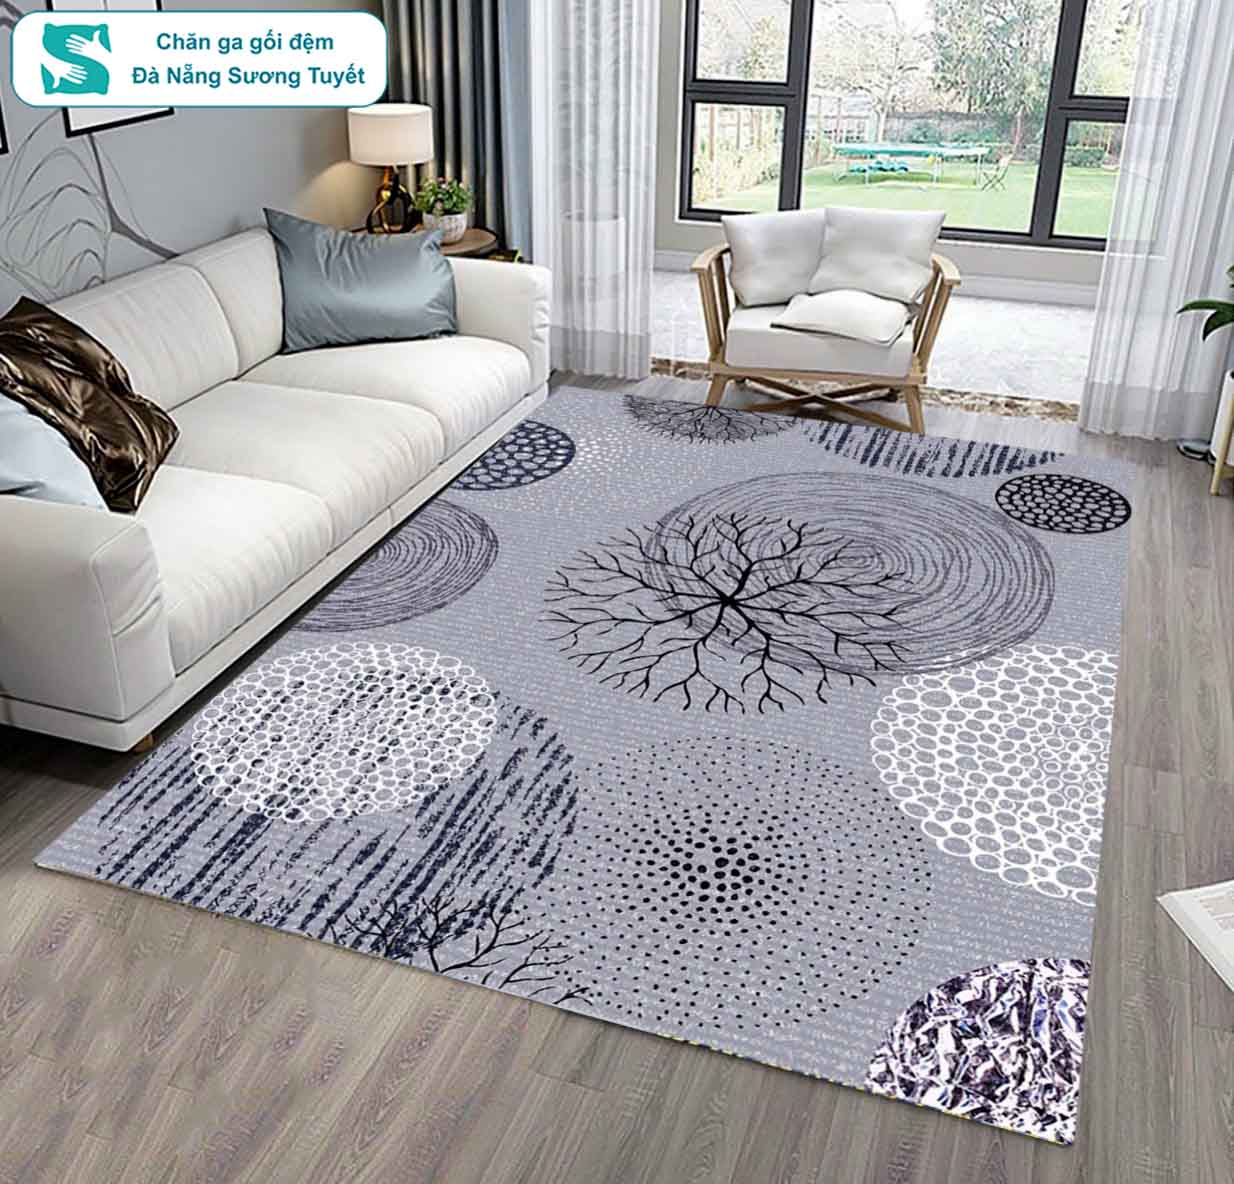 Thảm trải sàn Bali cùng với thảm lông, thảm xốp và thảm tấm là 4 loạt thảm thông dụng nhất hiện nay.